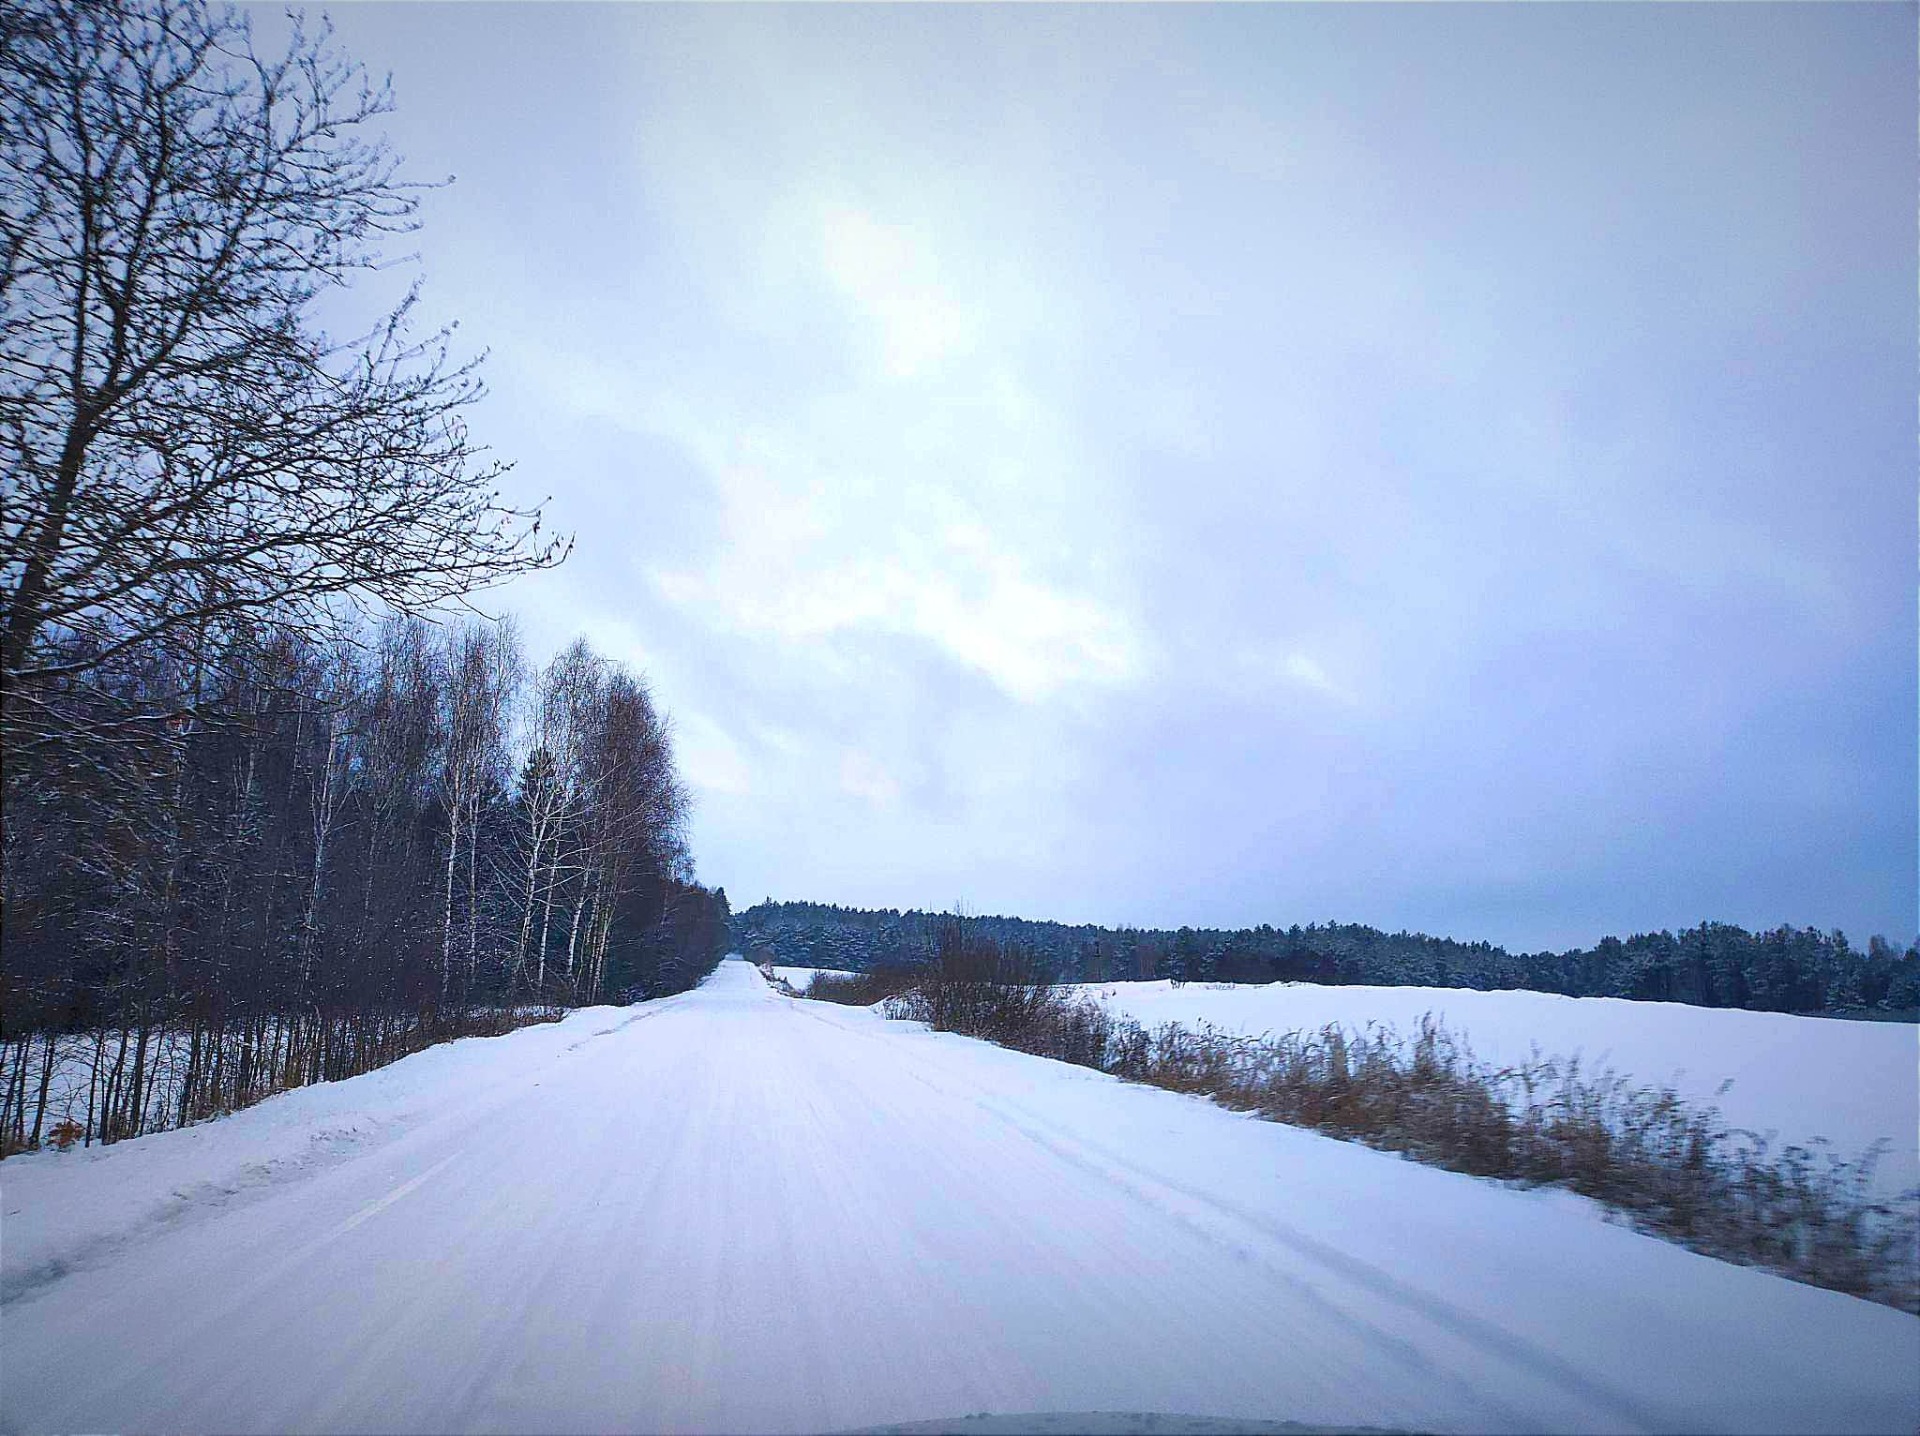 Krajobraz zimowy - pola i drogi pokryte śniegiem